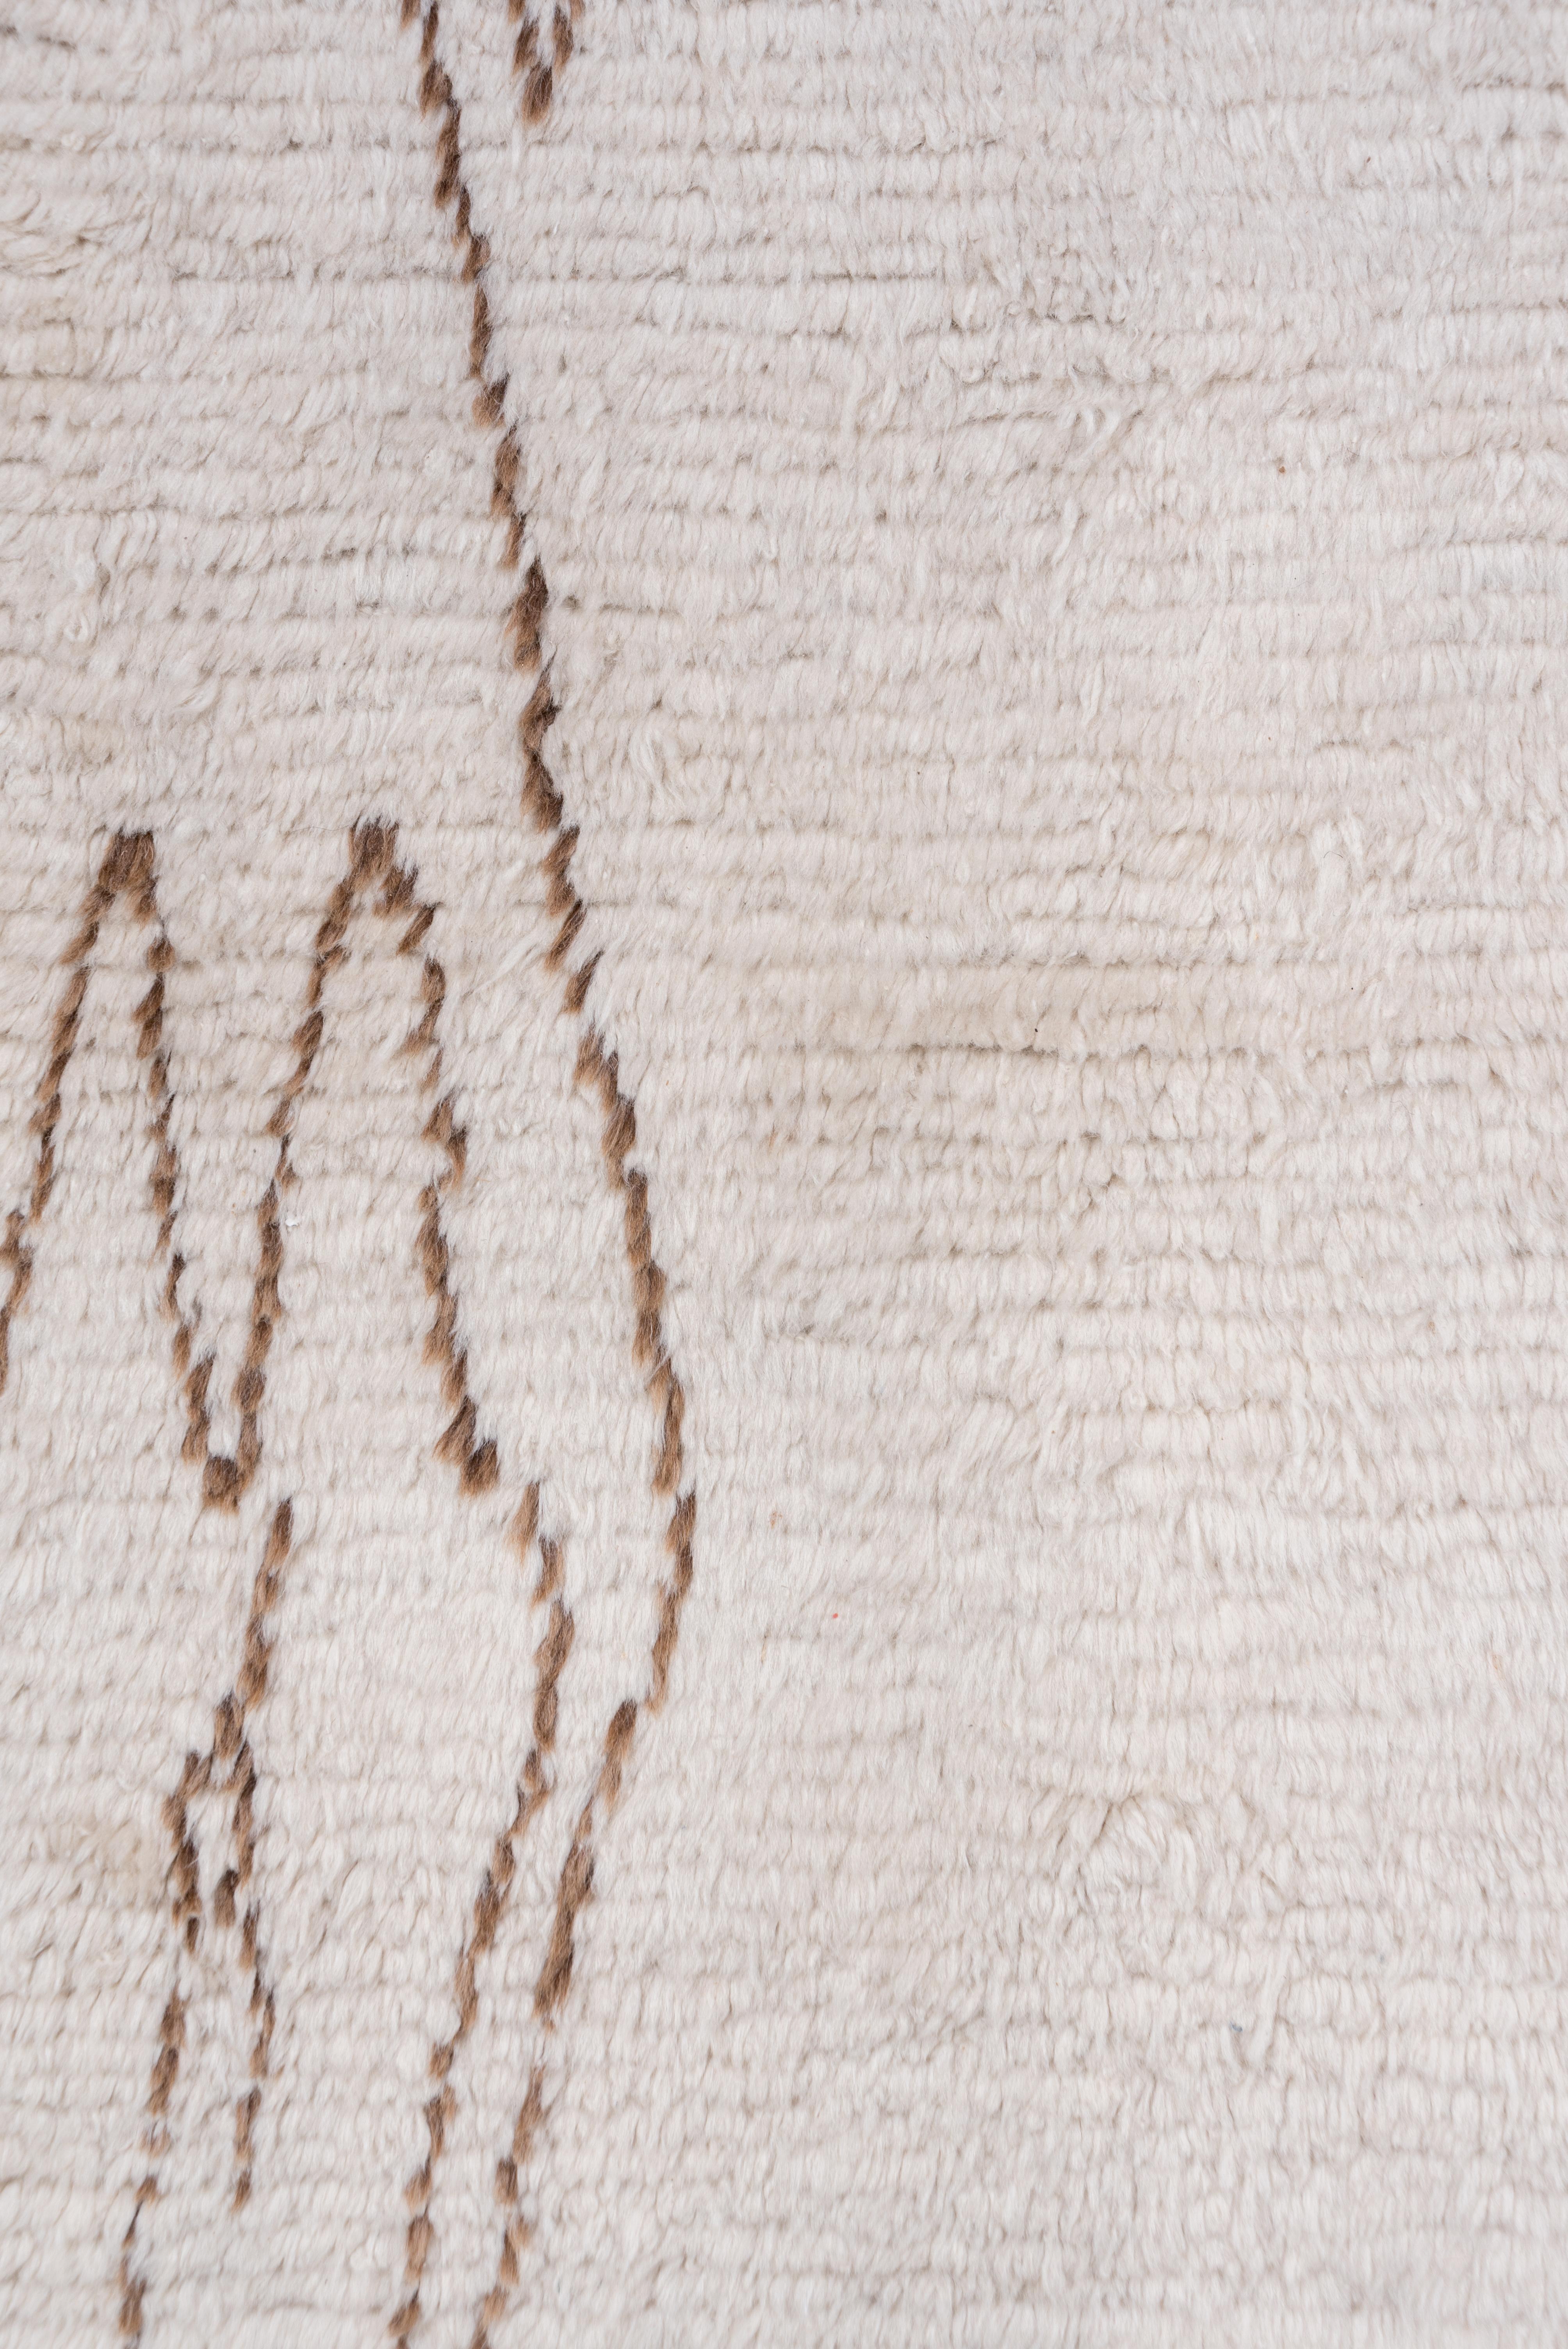 Ce chemin de table High Atlas sans bordure présente un poil couché de longueur moyenne en laine non teintée ivoire crème et un motif géométrique de couleur marron moyen composé de grands losanges conjoints et de divers grands motifs ouverts